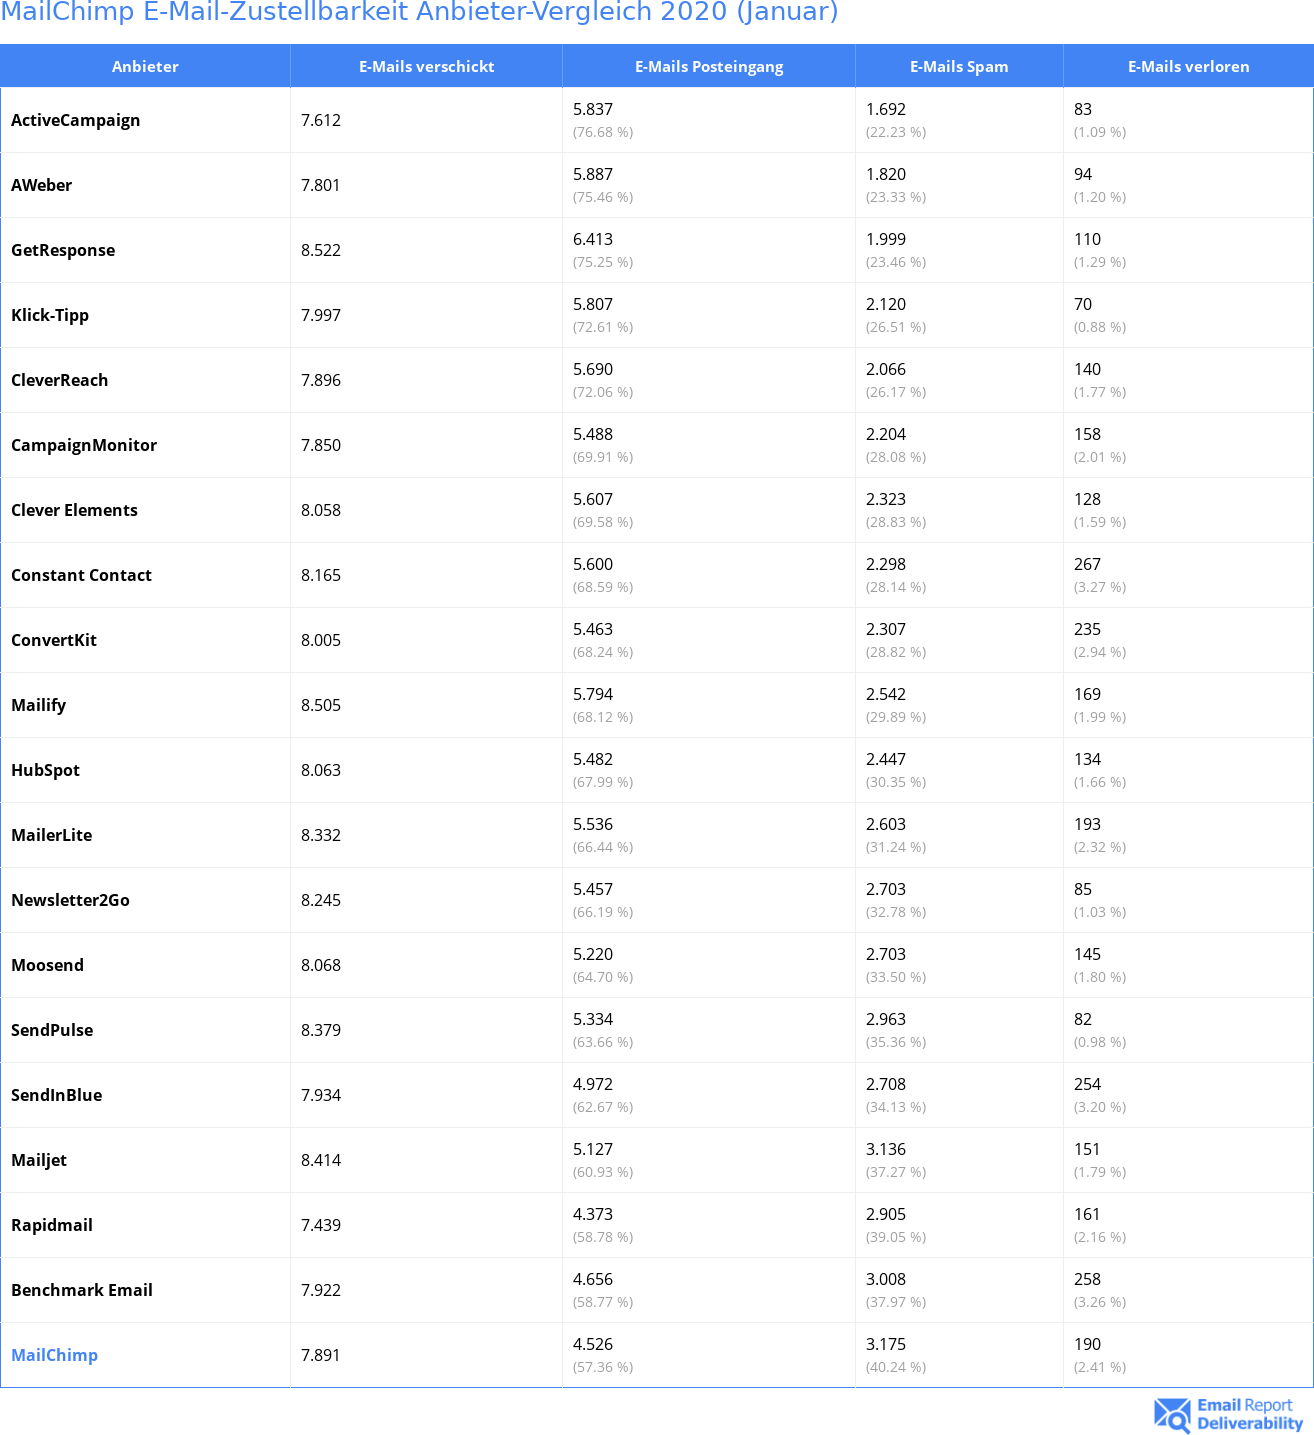 MailChimp E-Mail-Zustellbarkeit Anbieter-Vergleich 2020 (Januar)